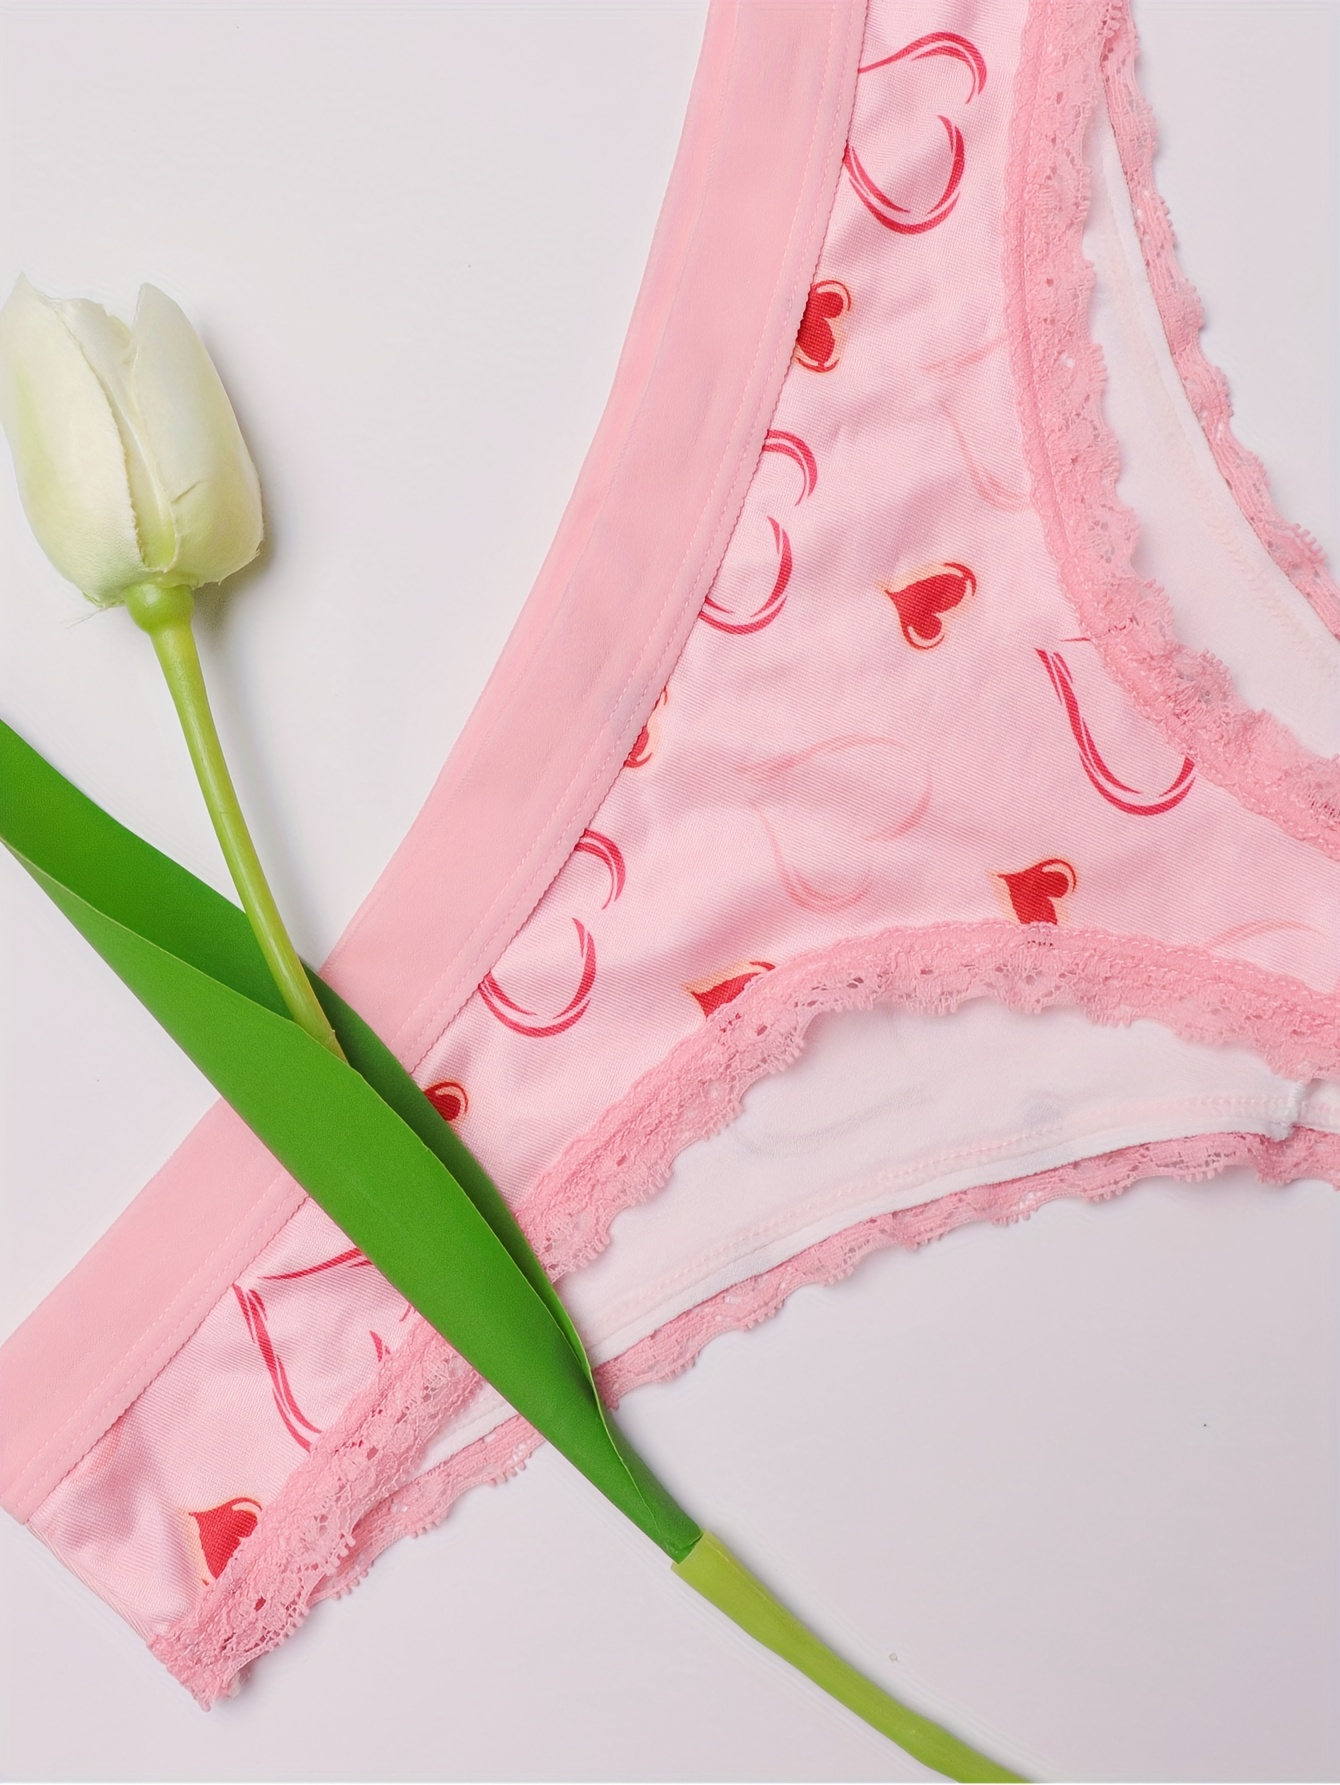 7pcs Floral & Heart Print Thongs, Cute & Comfy Lace Trim Intimates Panties,  Women's Lingerie & Underwear